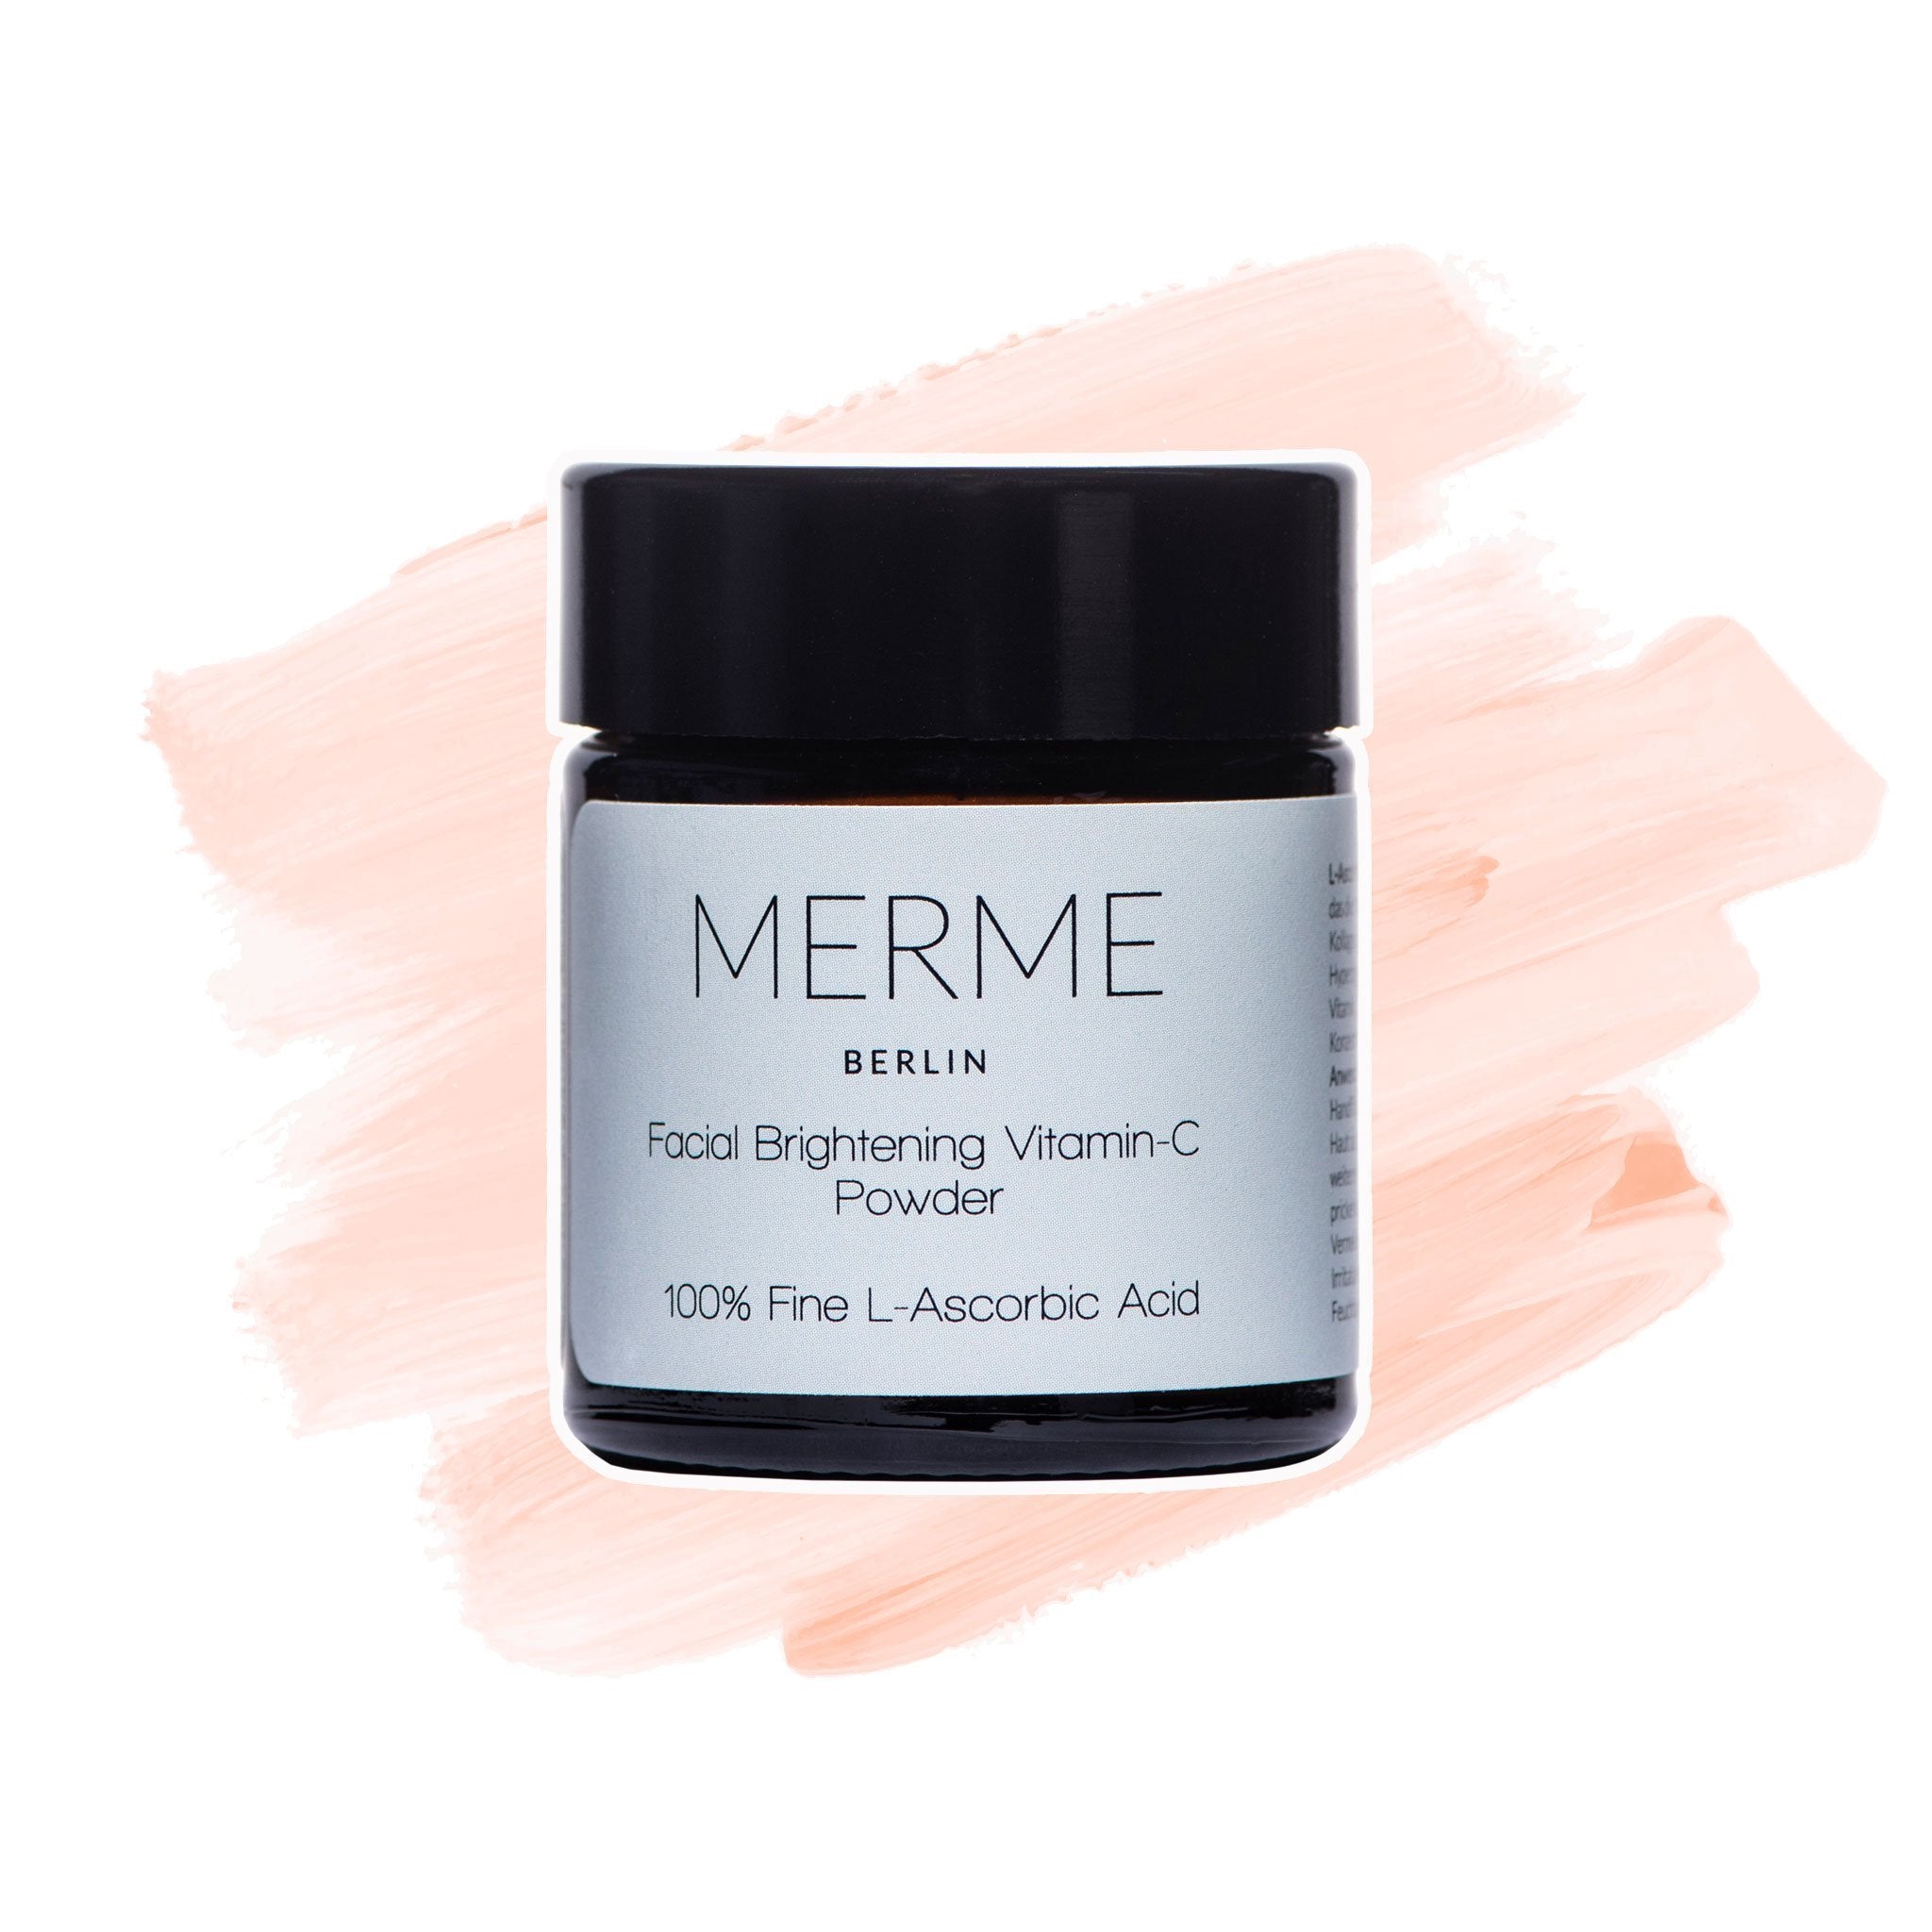 Merme Berlin | Facial Brightening Vitamin C Powder - lockenkopf